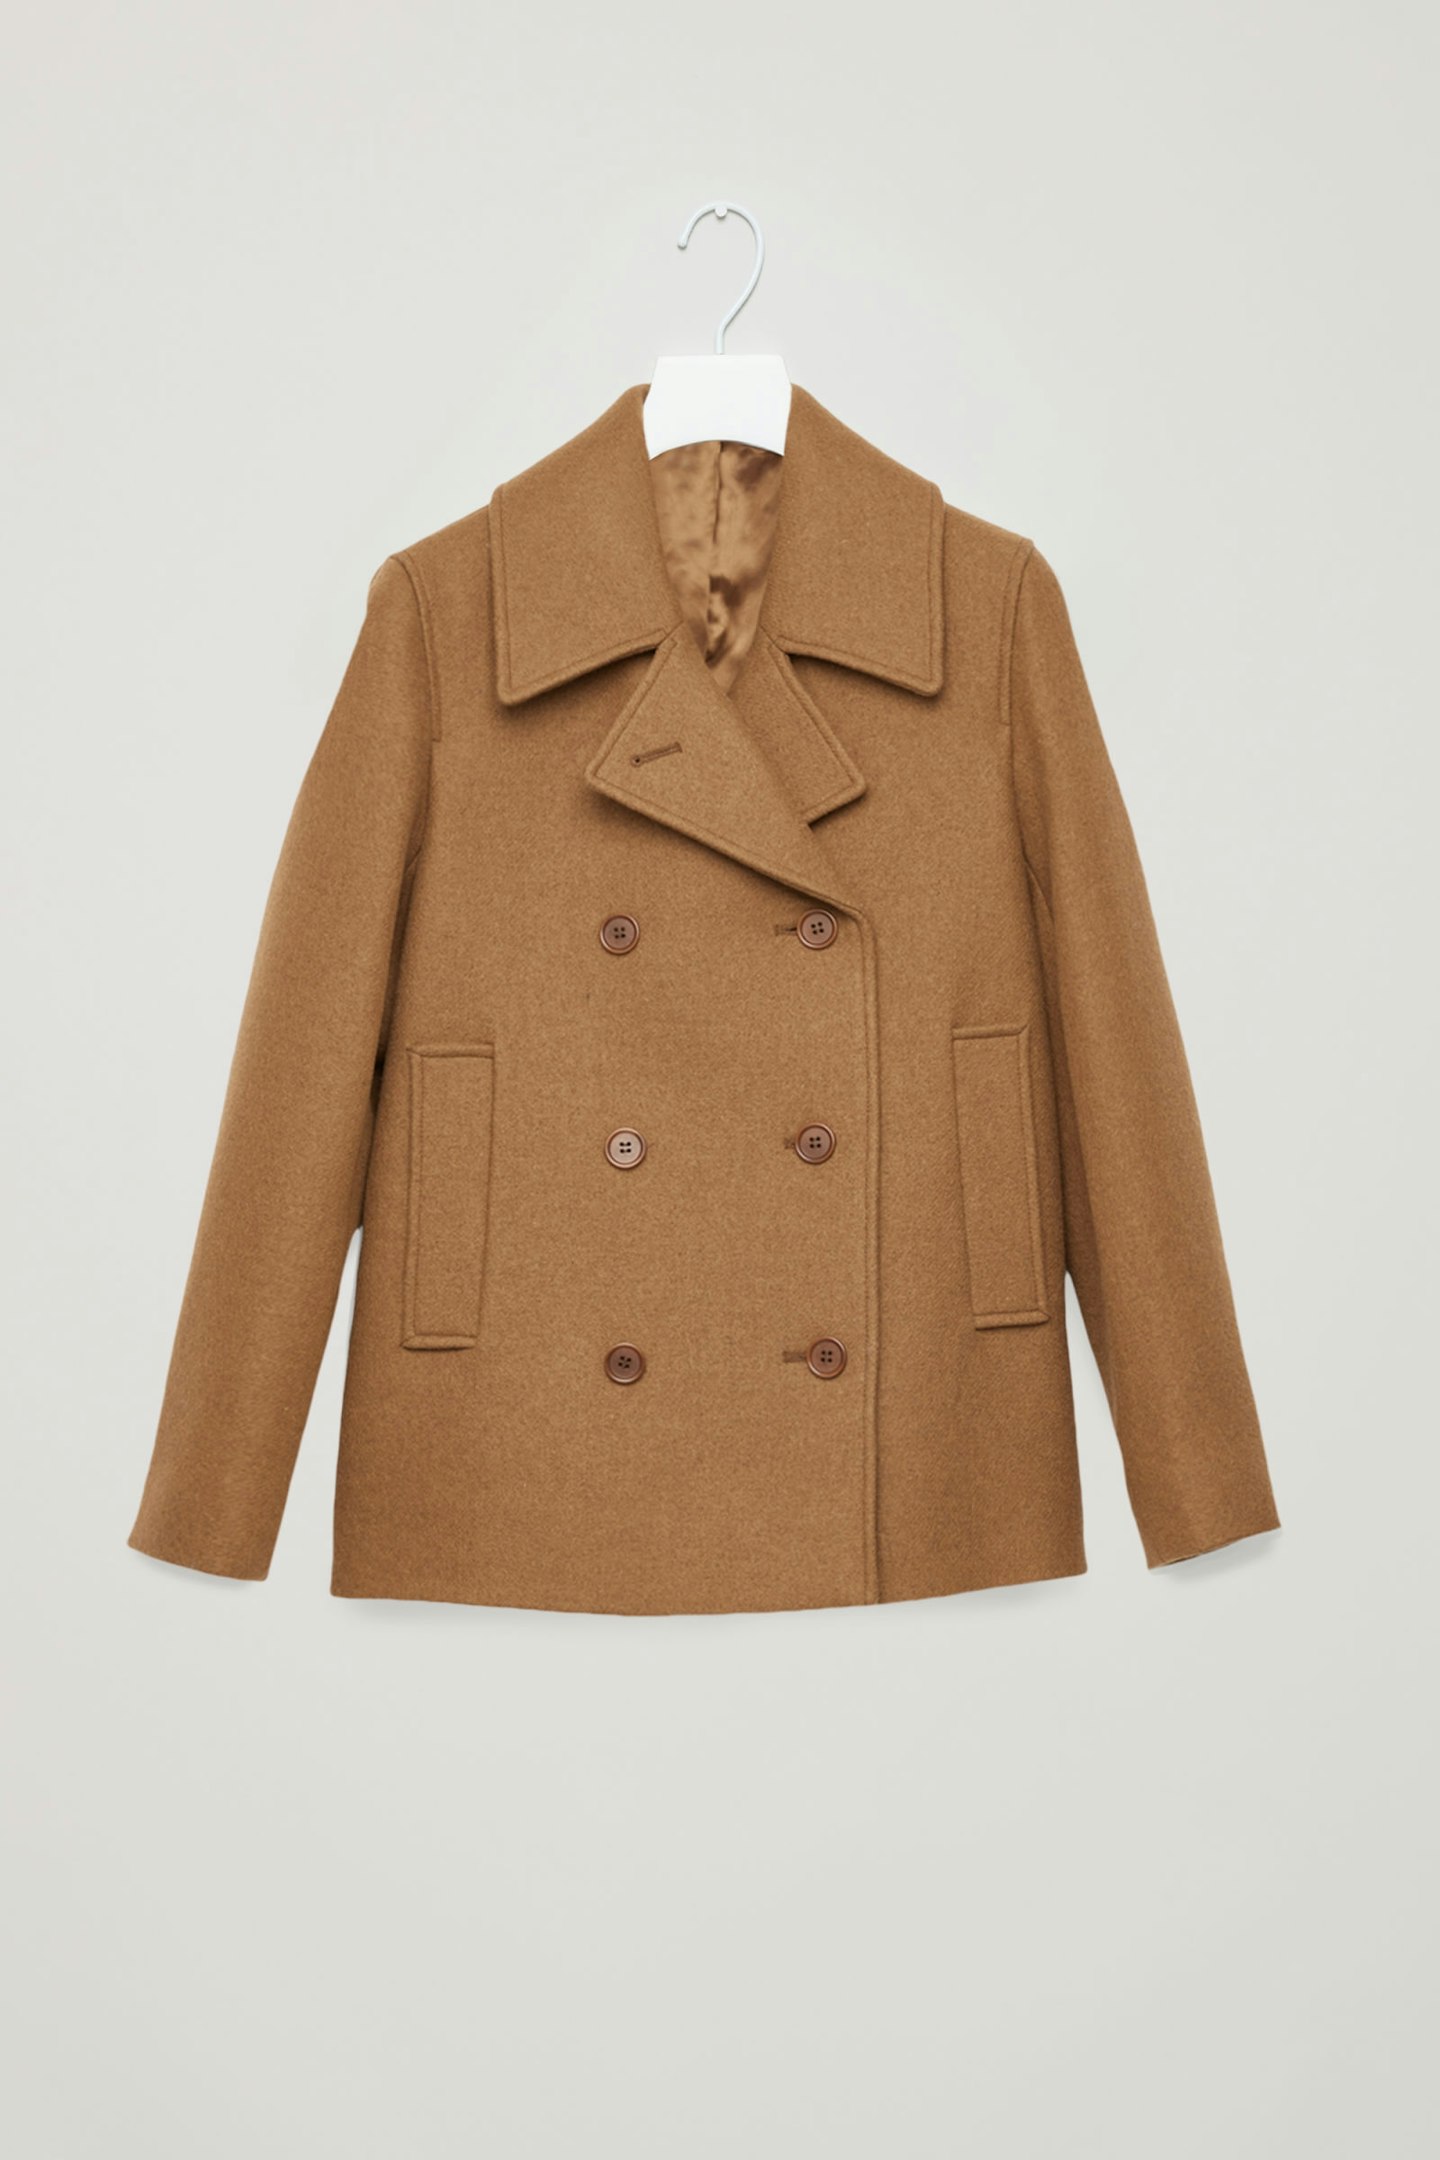 Cos, Short Wool Pea Coat, £150